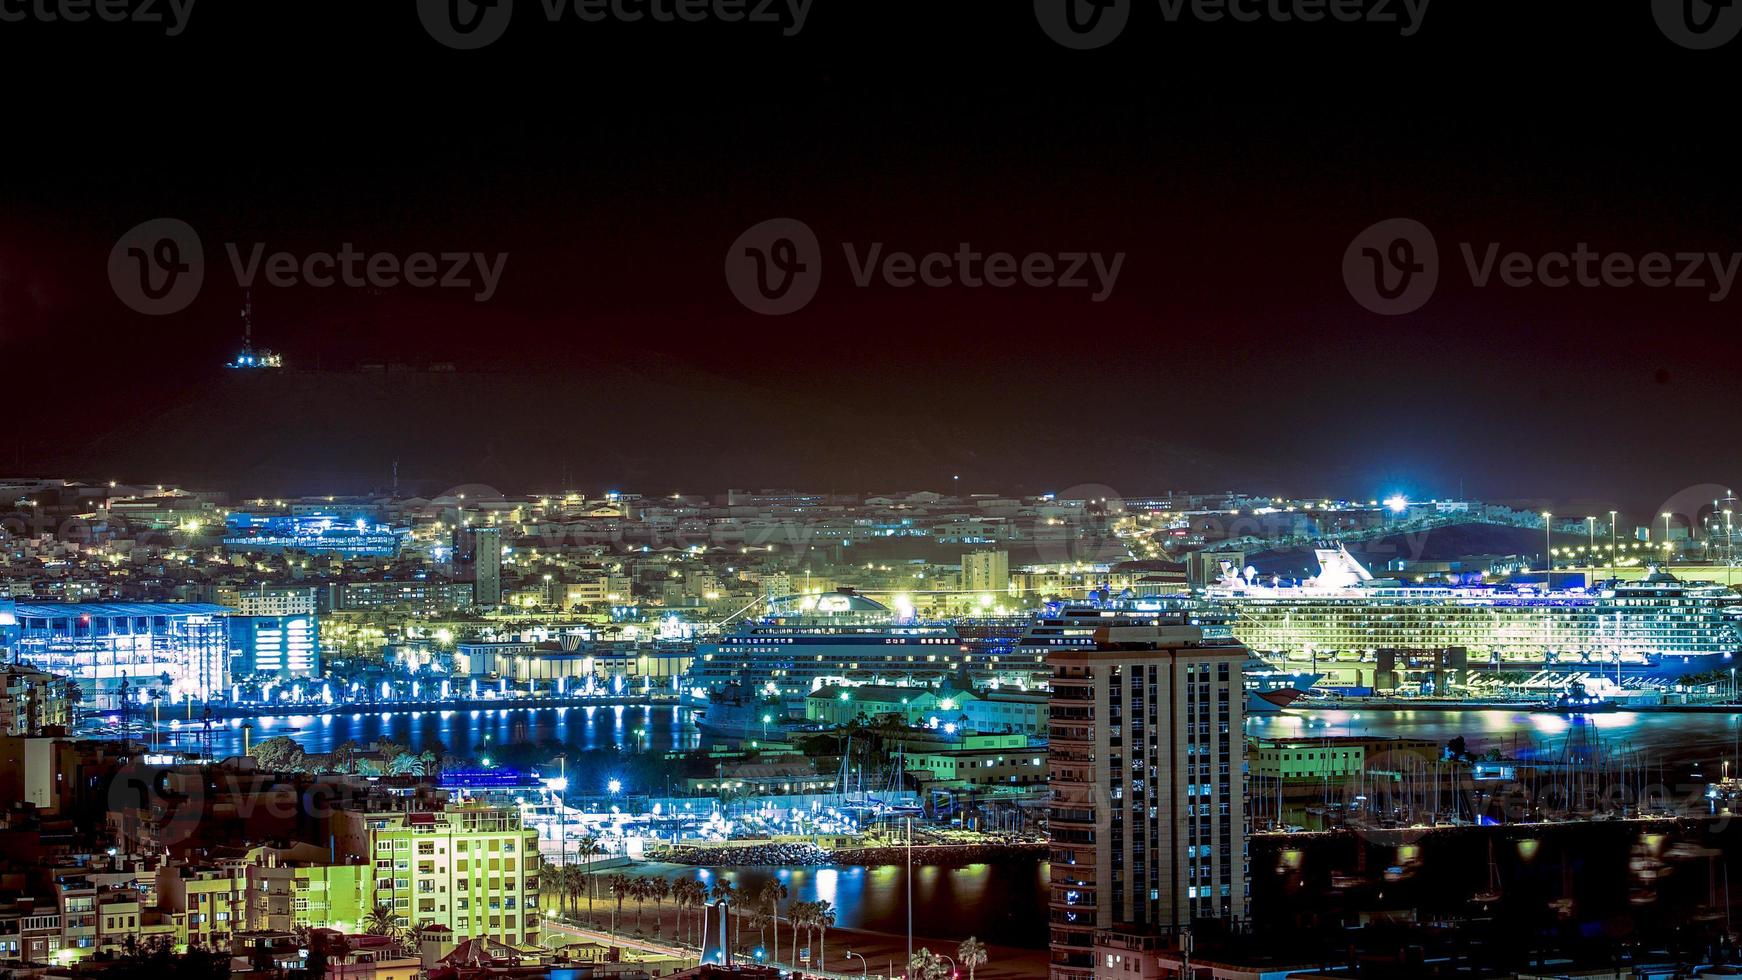 panoramica della città di las palmas di notte foto